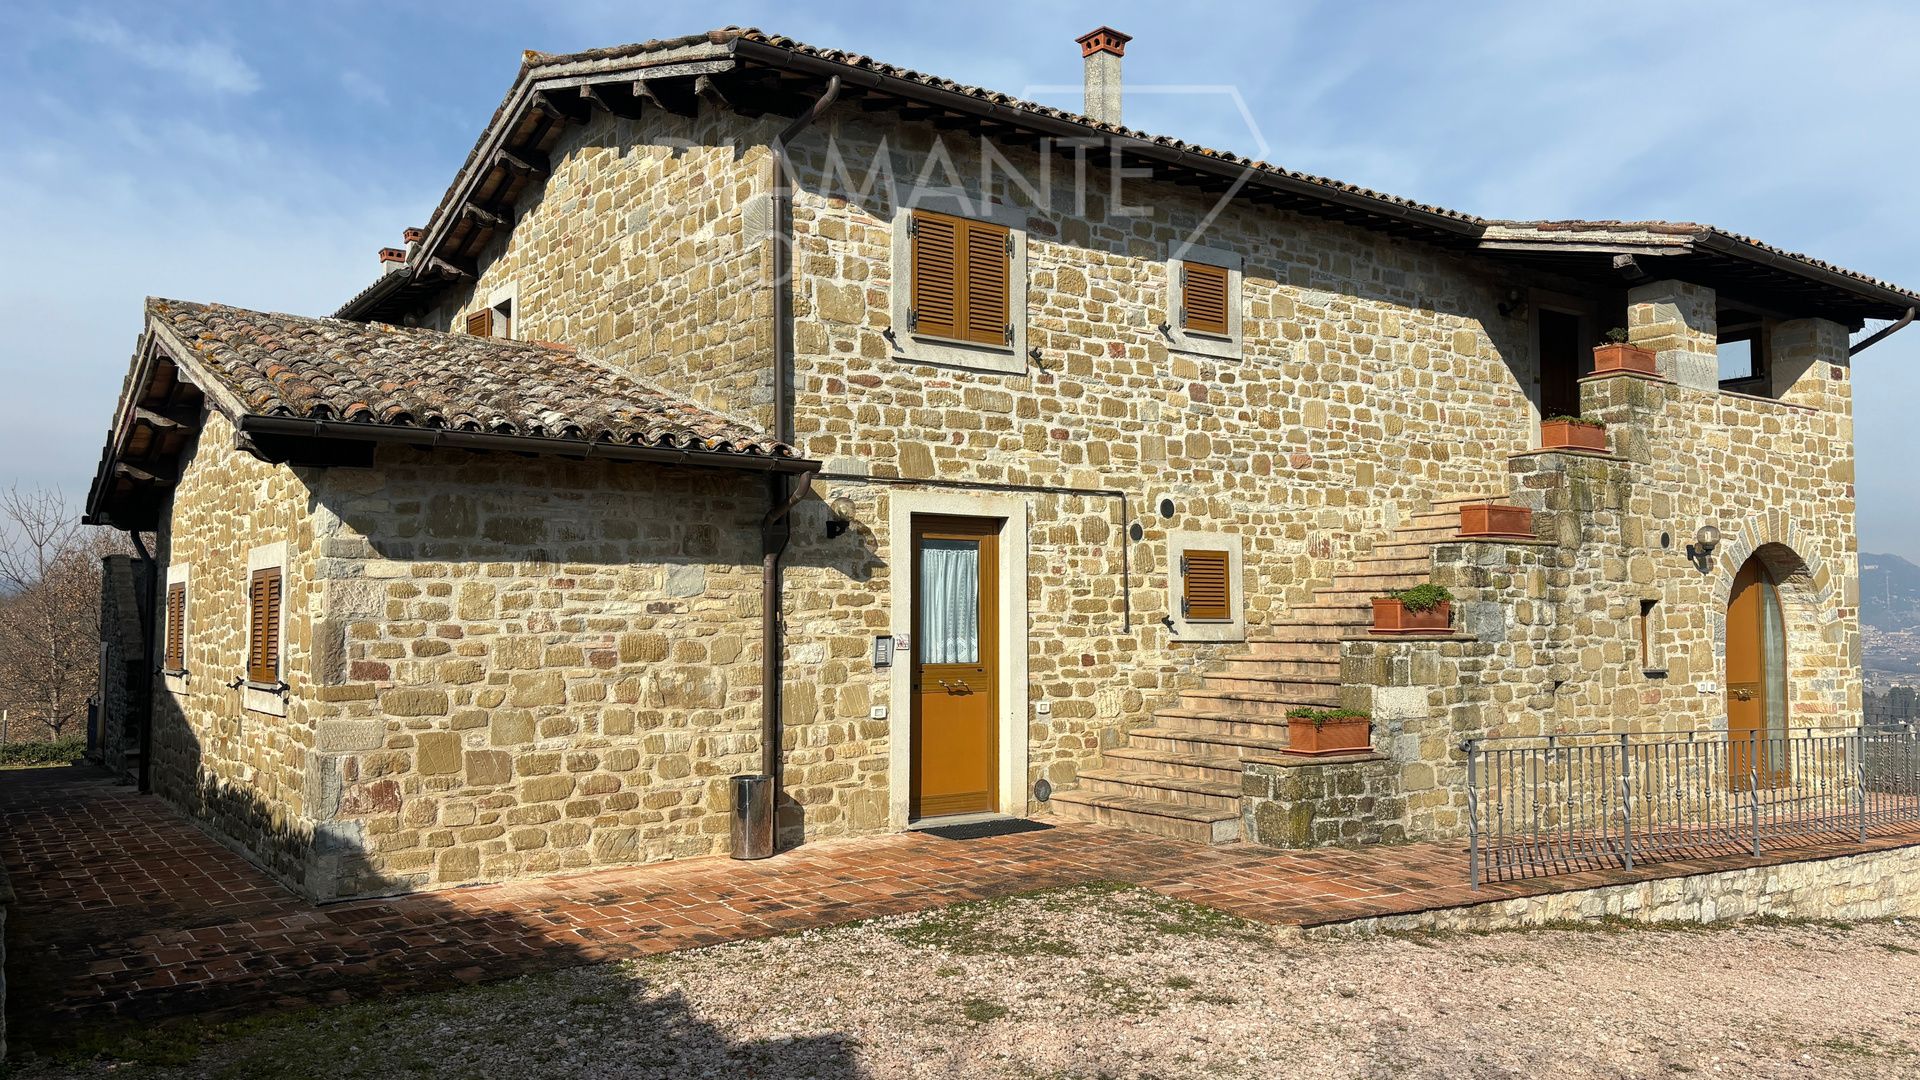 For sale cottage in quiet zone Gubbio Umbria